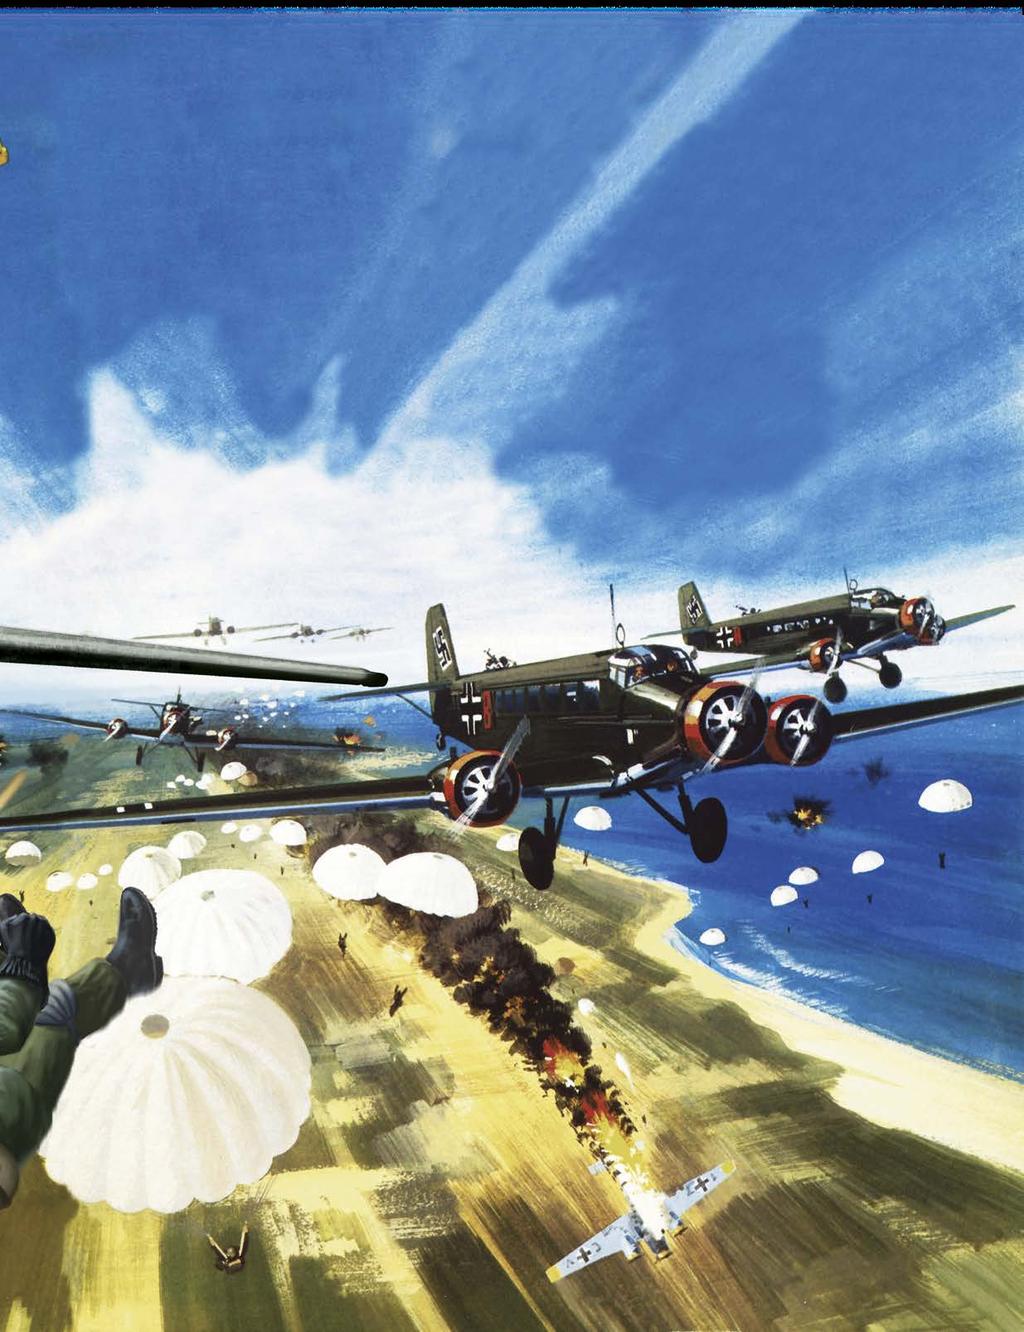 VIHOLLINEN TULI TAIVAALTA Toukokuussa 1941 taivas liittoutuneiden hallitseman Kreetan yllä täyttyi sadoista lentokoneista ja